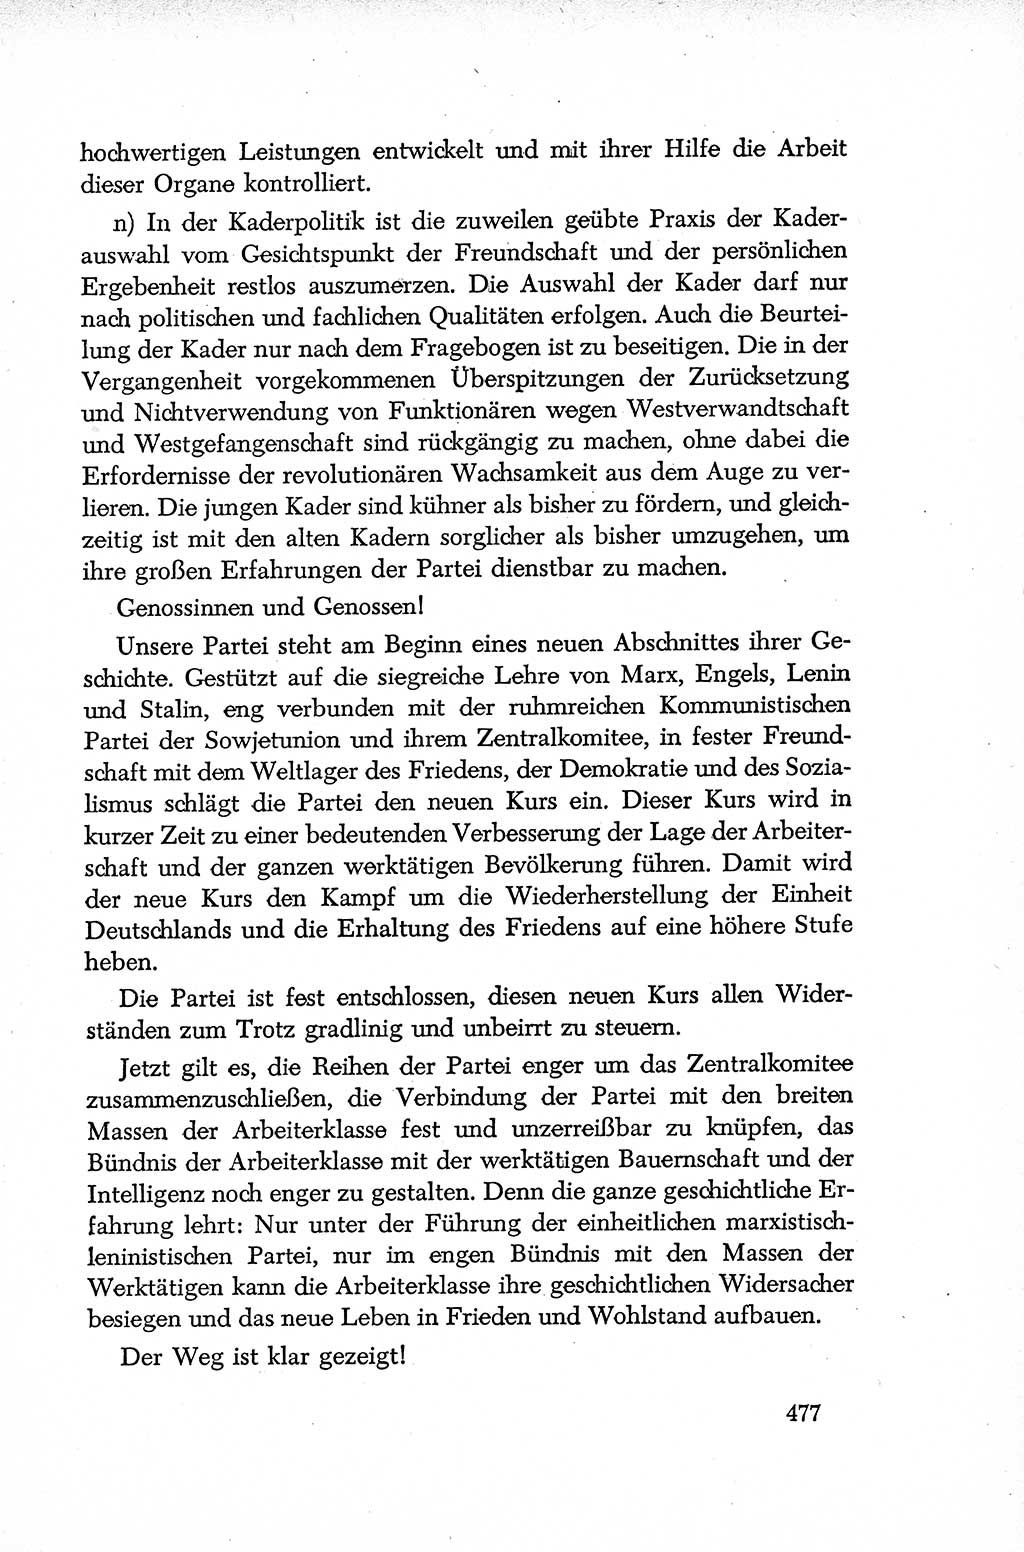 Dokumente der Sozialistischen Einheitspartei Deutschlands (SED) [Deutsche Demokratische Republik (DDR)] 1952-1953, Seite 477 (Dok. SED DDR 1952-1953, S. 477)